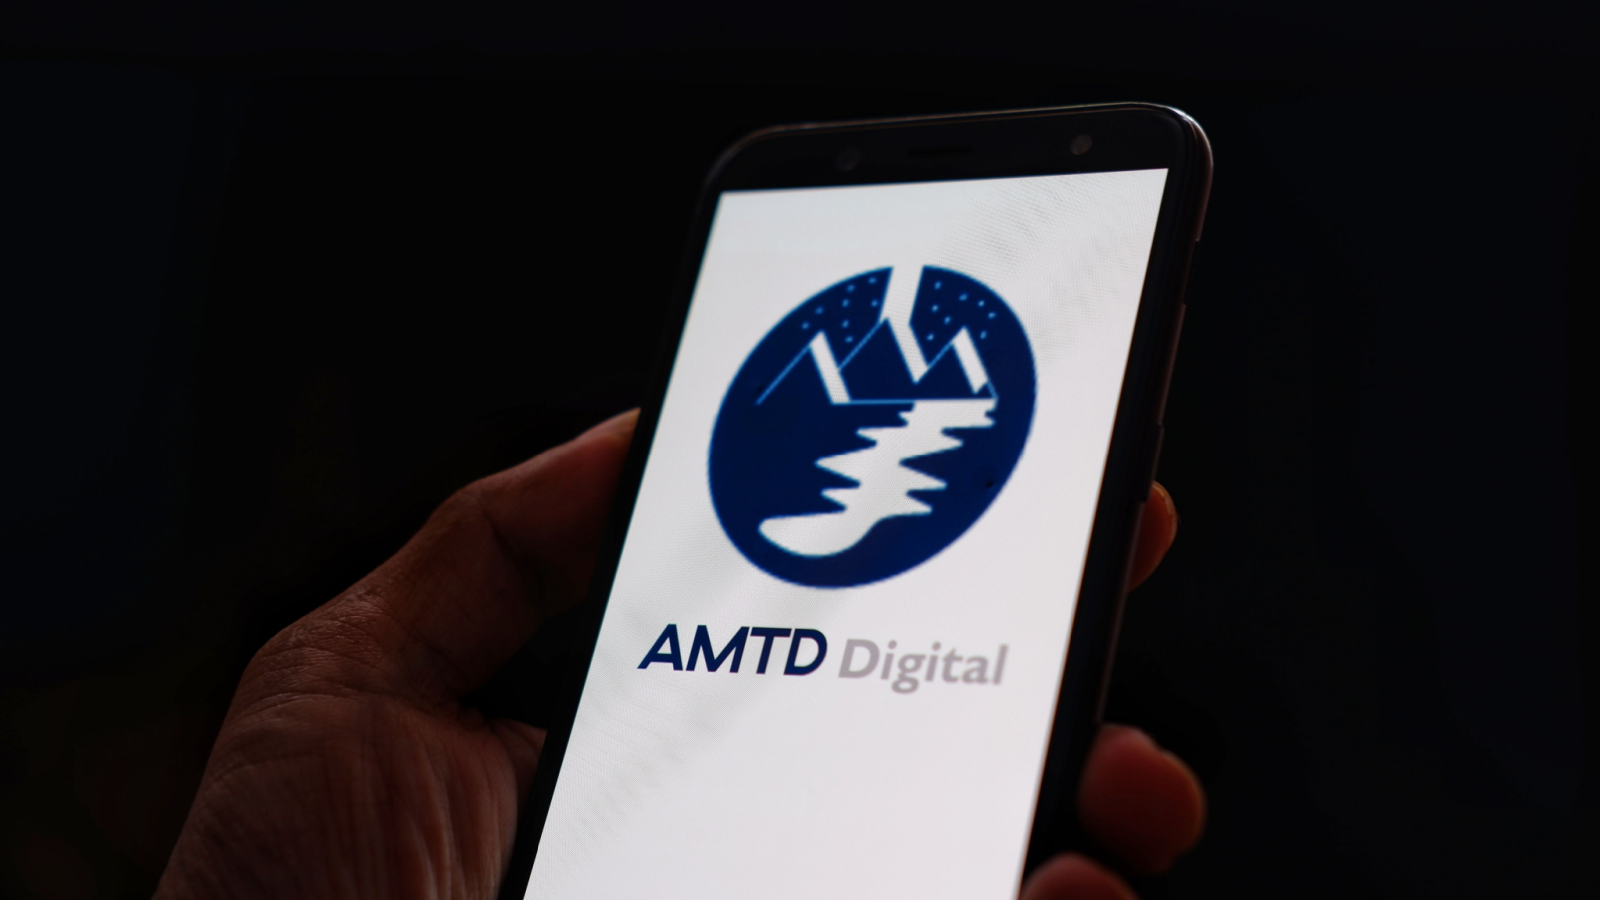 AMTD Digital. Inc logo displayed on smartphone with dark background. AMTD digital (HKD) is intelligent digital financial services platform based in Hong Kong.